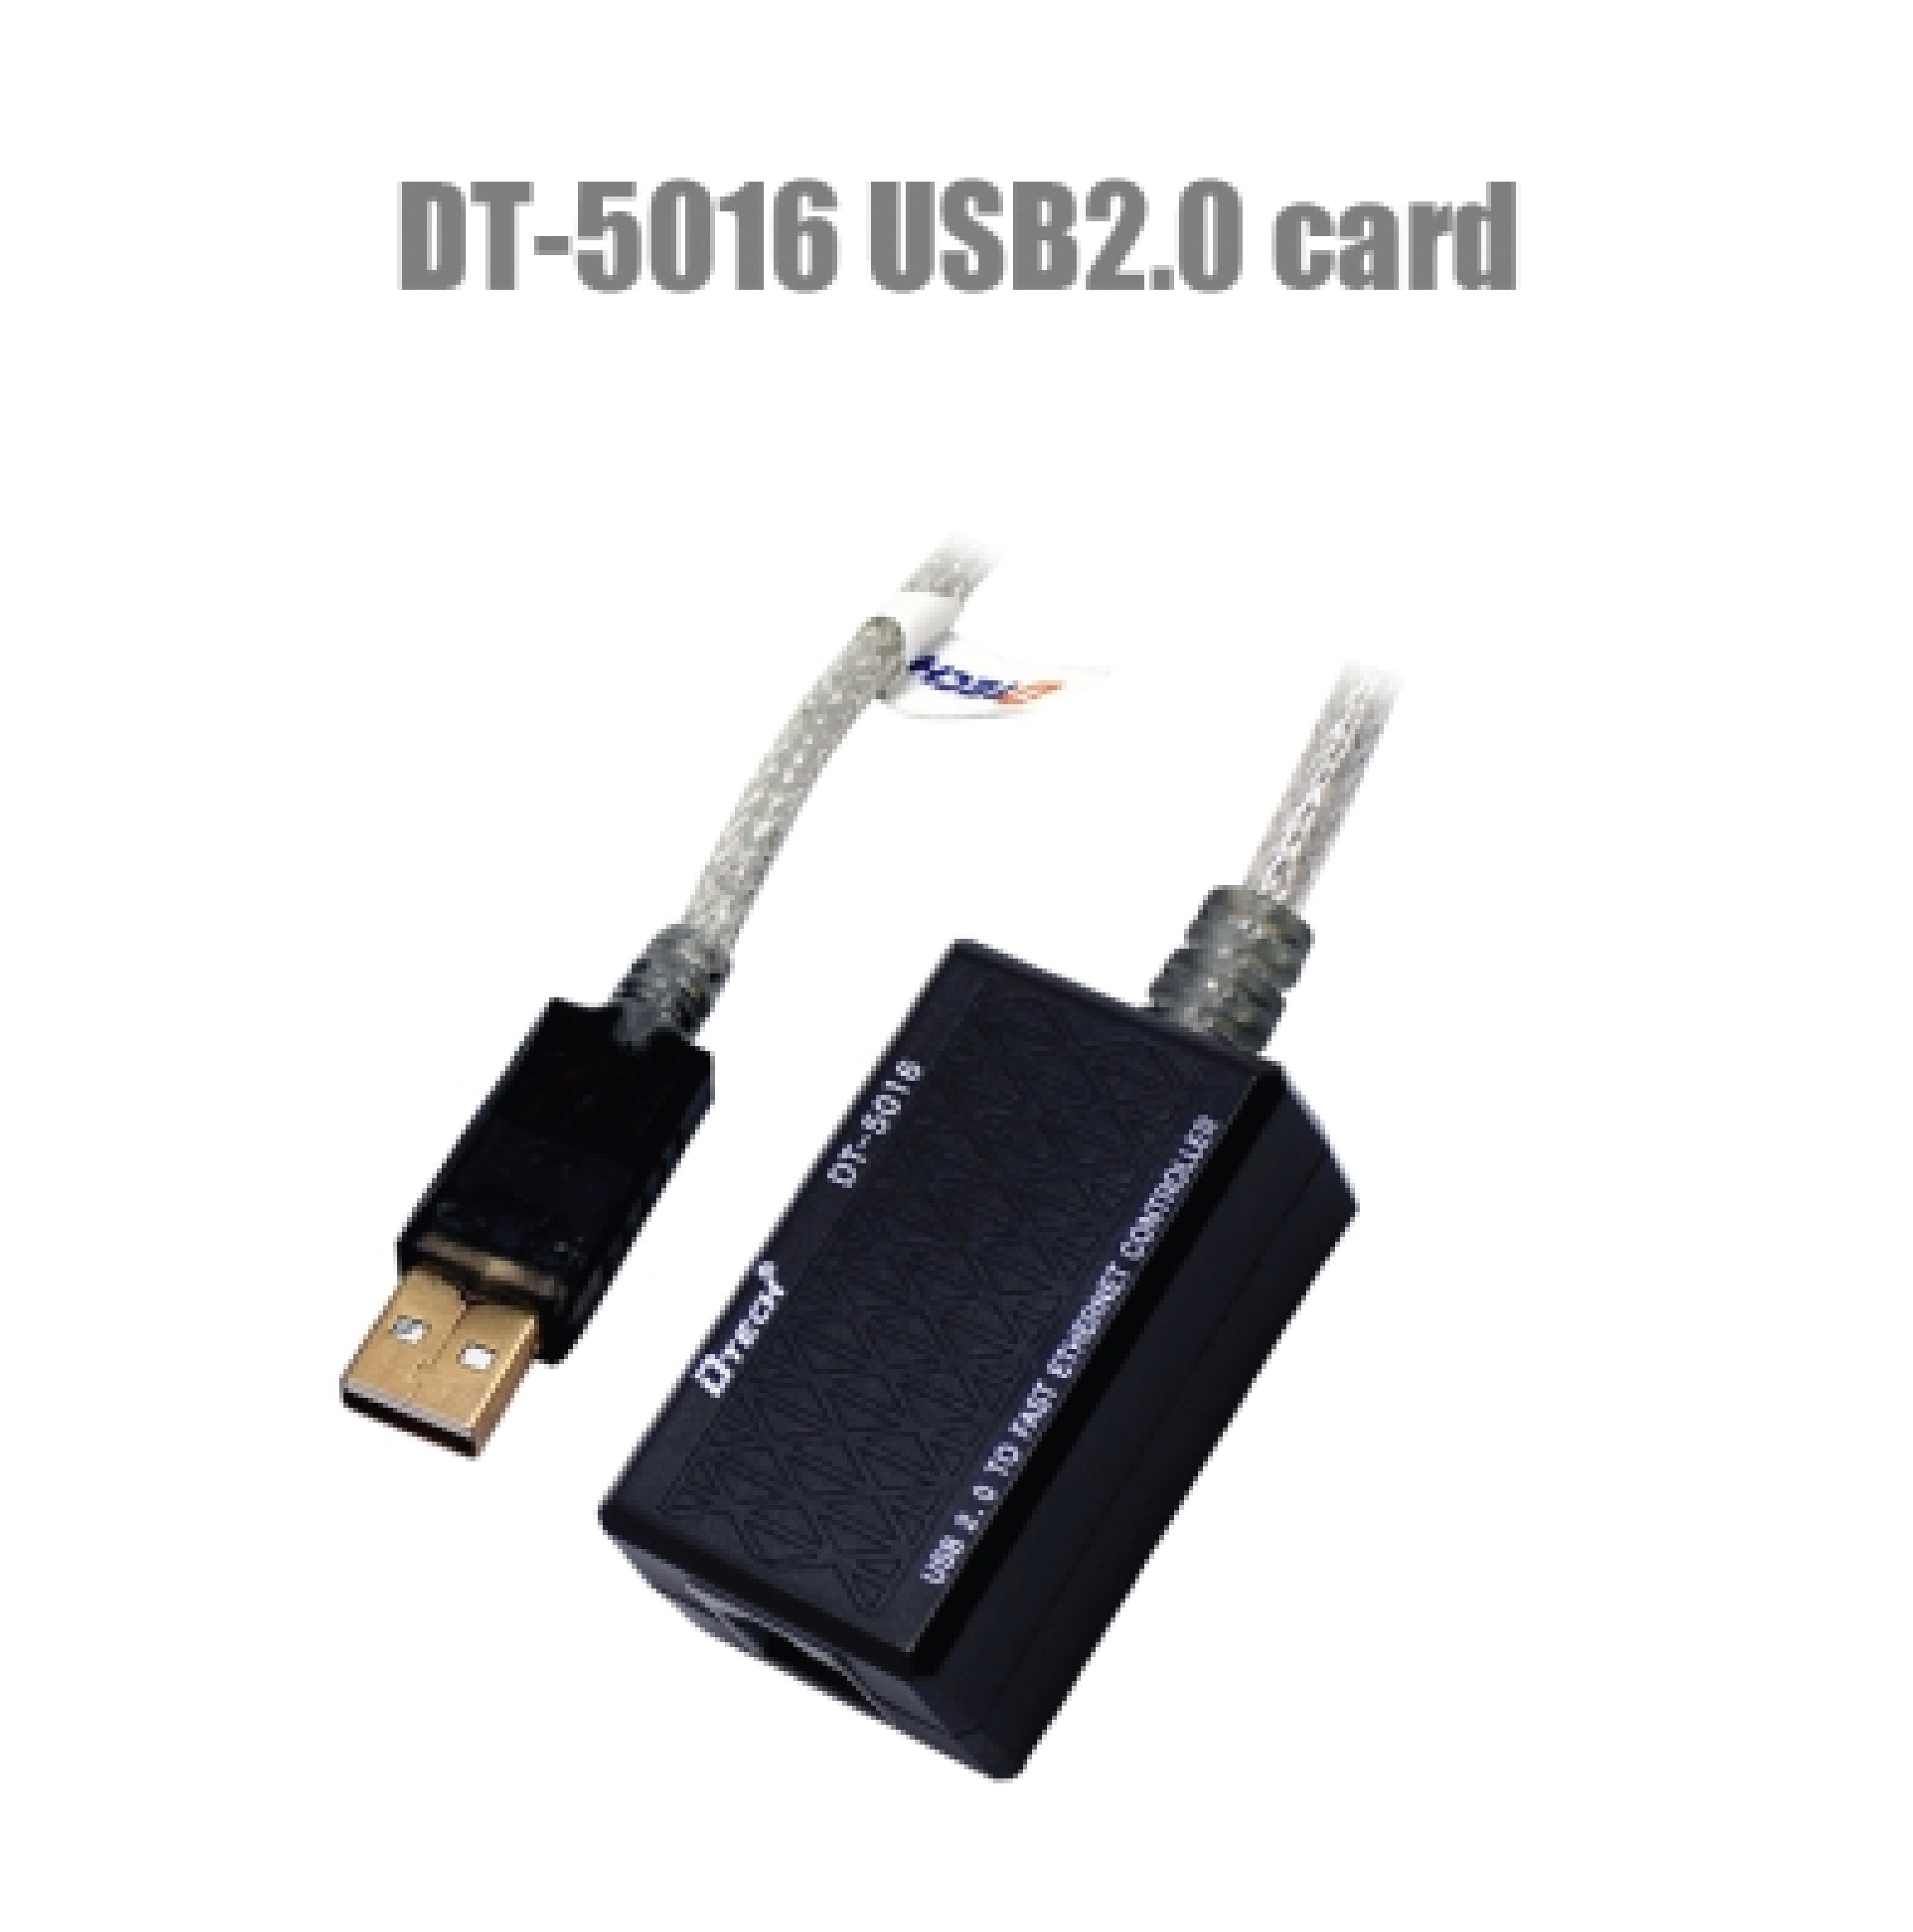 DTECH 5016 USB Network